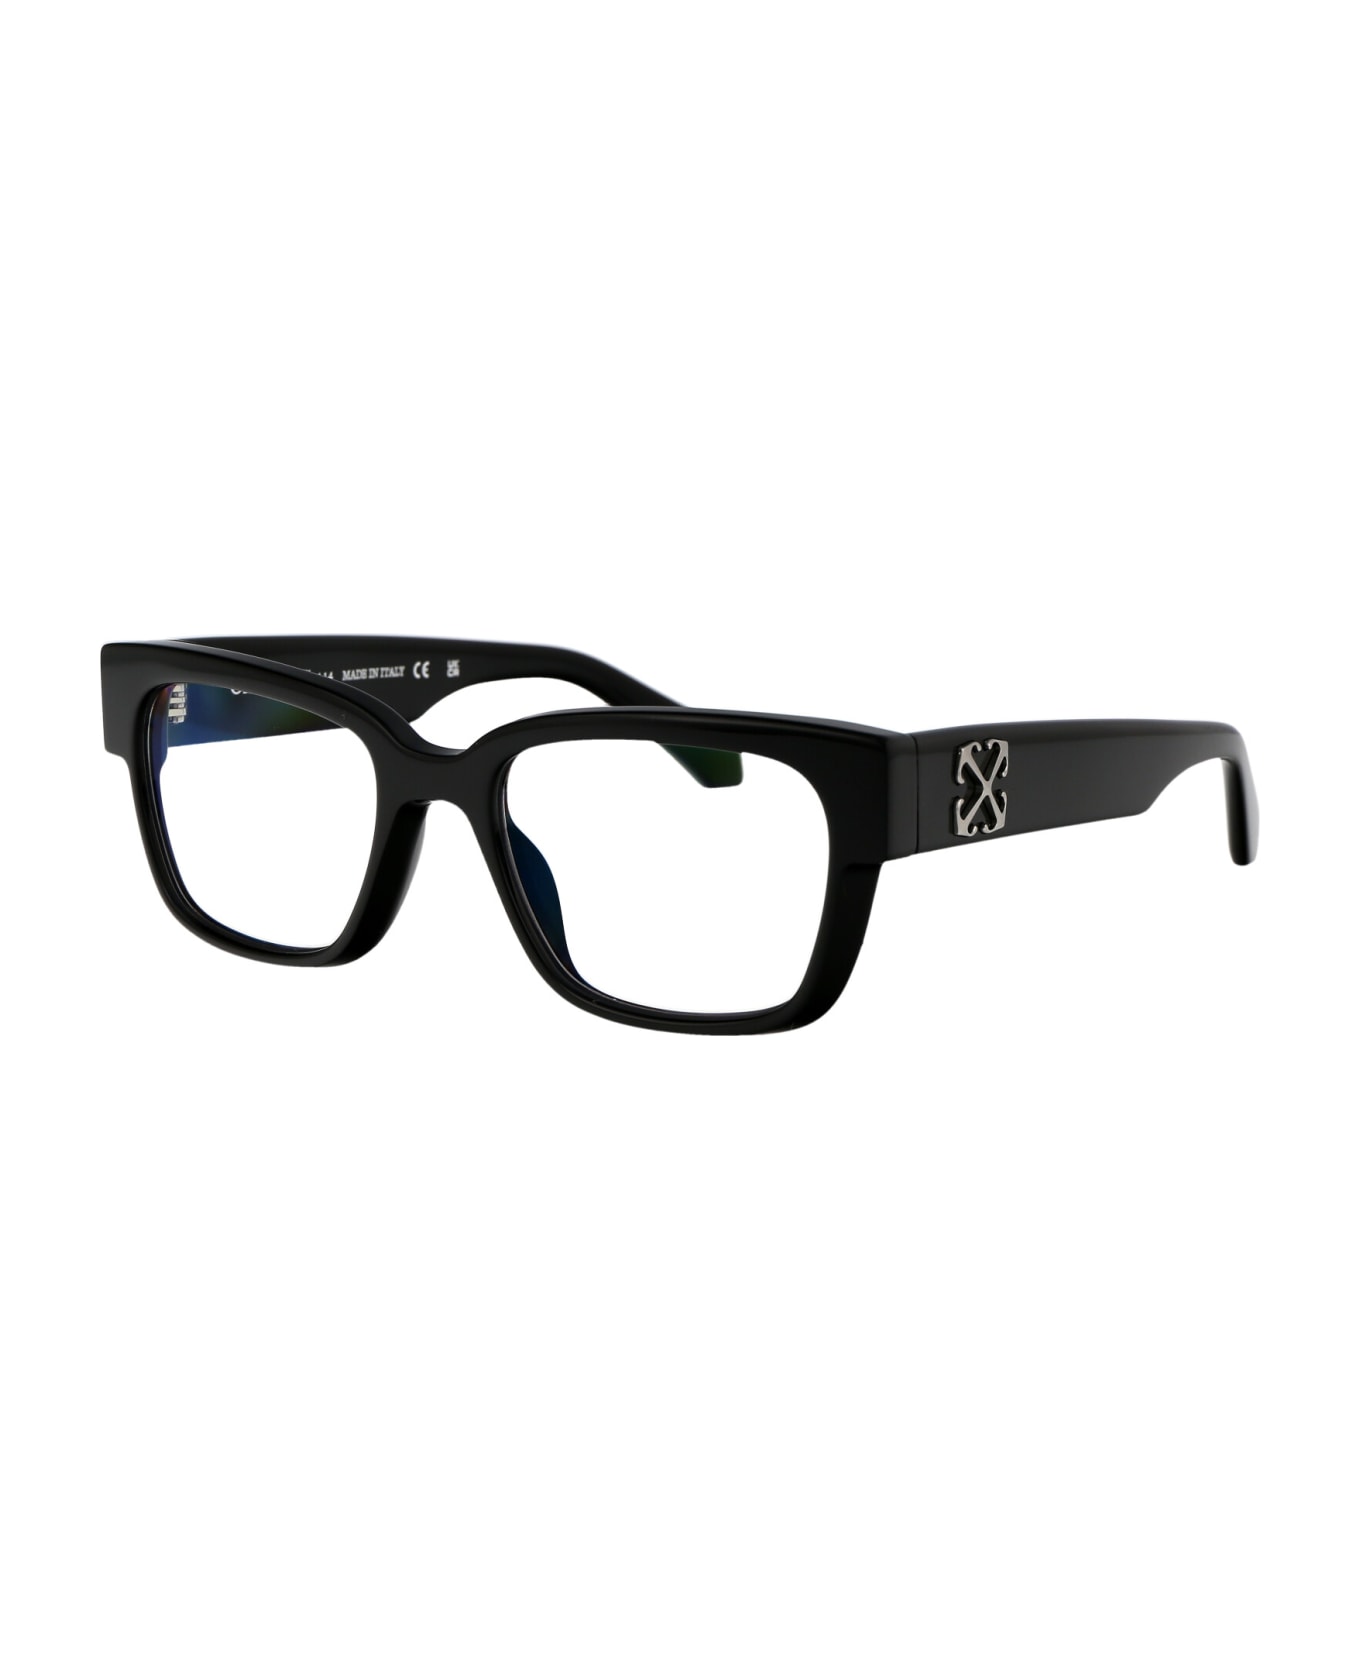 Off-White Optical Style 59 Glasses - 1000 BLACK アイウェア